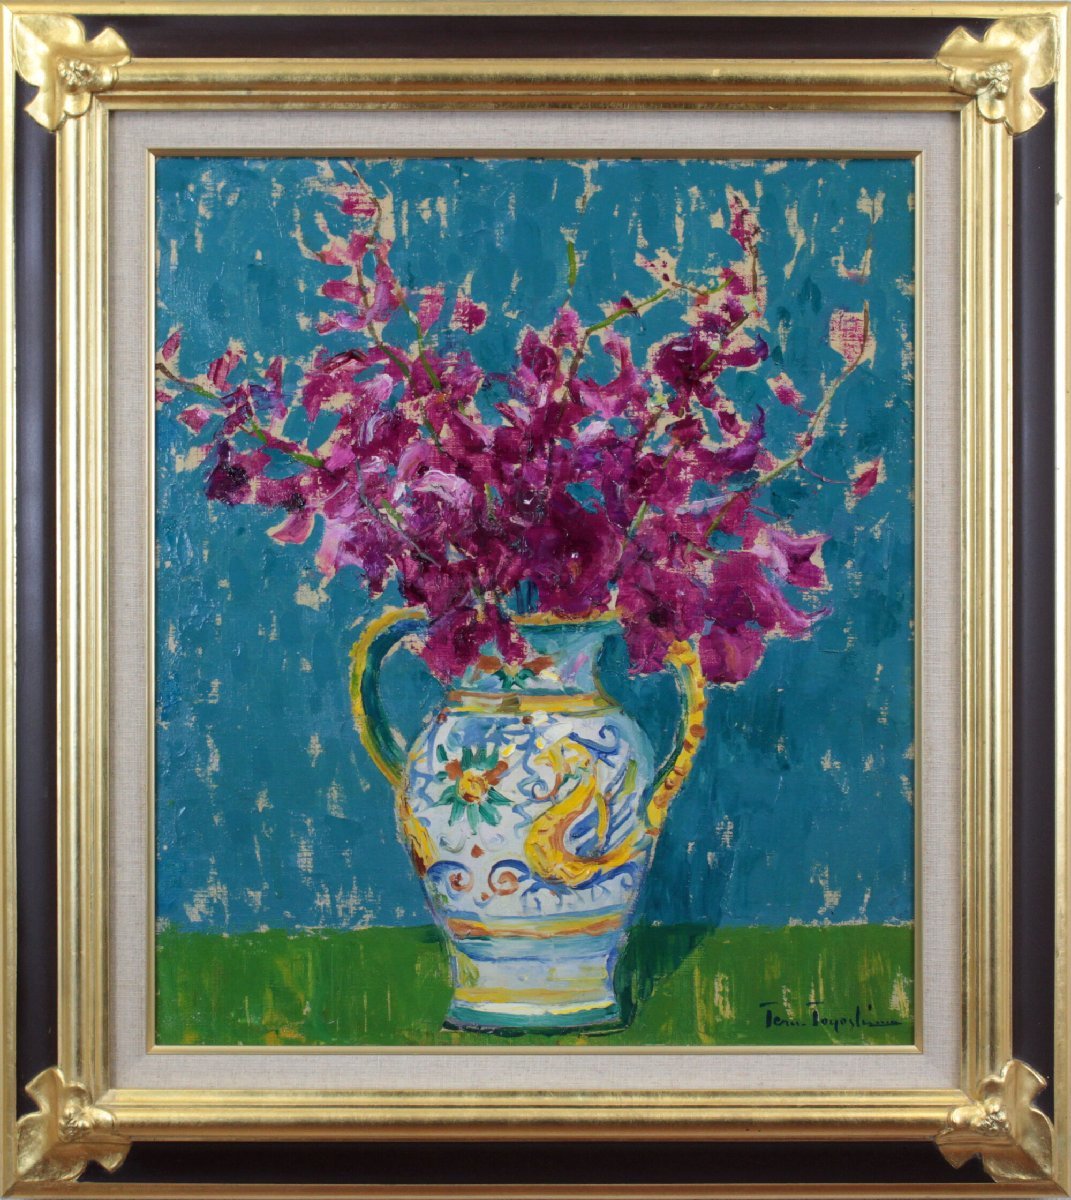 Teruhiko Toyoshima Blumen Ölgemälde [Authentizitätsgarantie] Gemälde - Hokkaido Gallery, Malerei, Ölgemälde, Stillleben